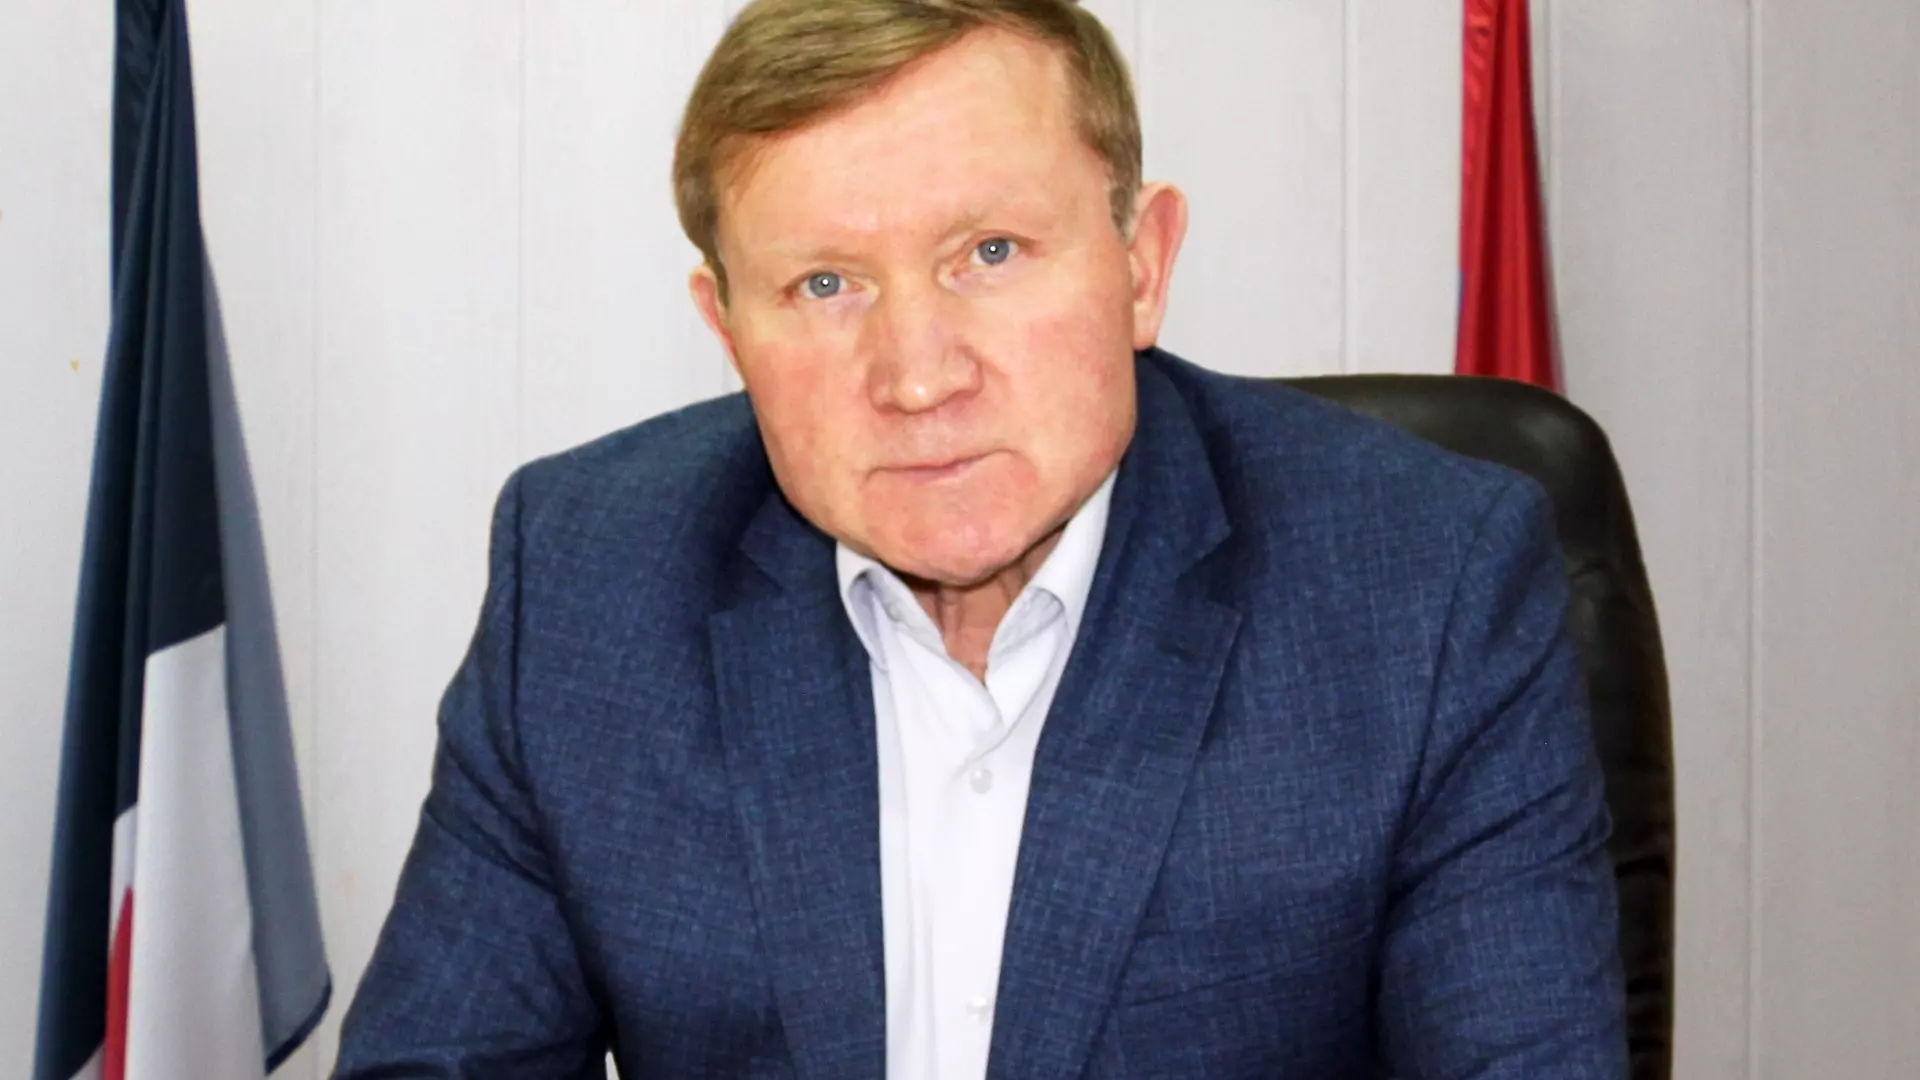 Глава Кезского района Богданов внезапно подал в отставку по собственному желанию